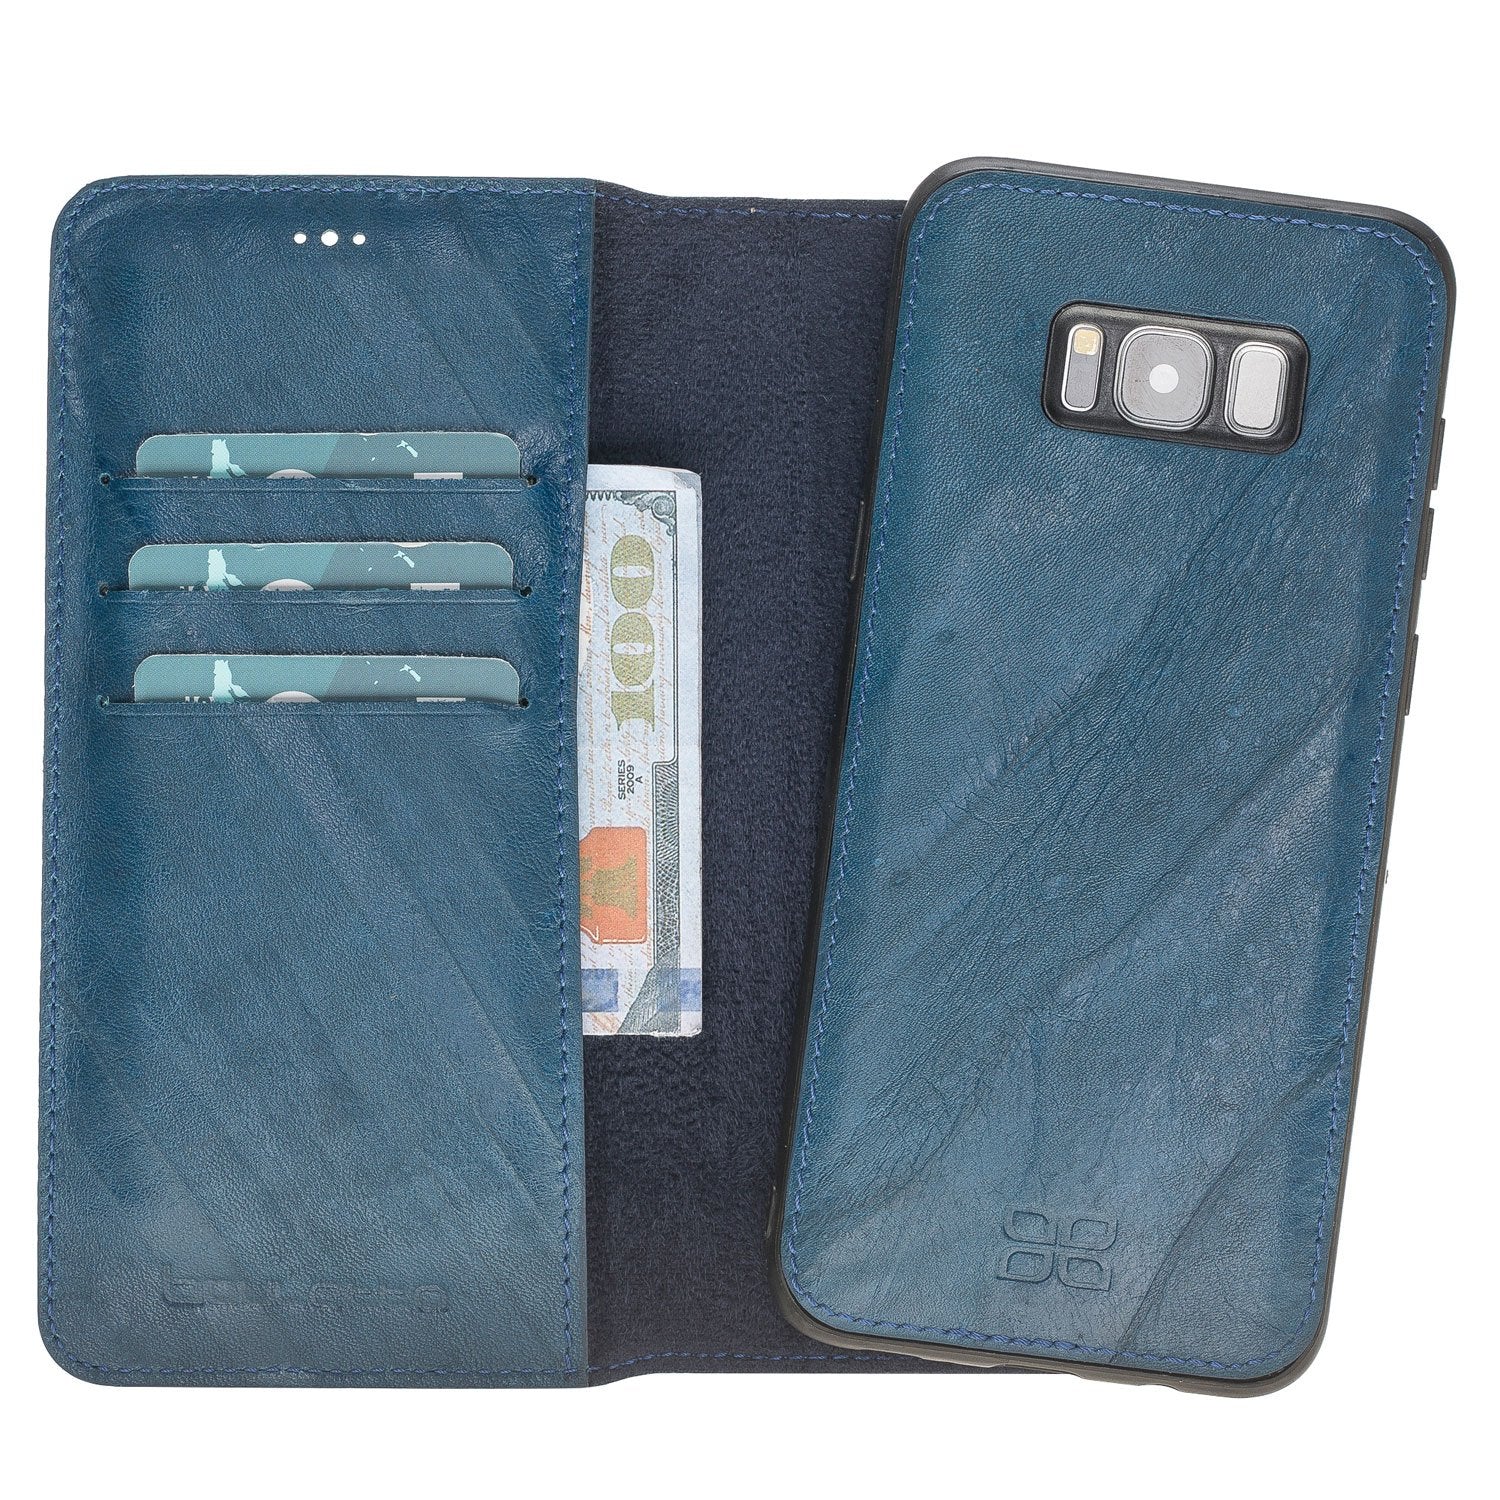 Magnetische abnehmbare Leder Geldbörse für Samsung S8 - Blau gefaltet